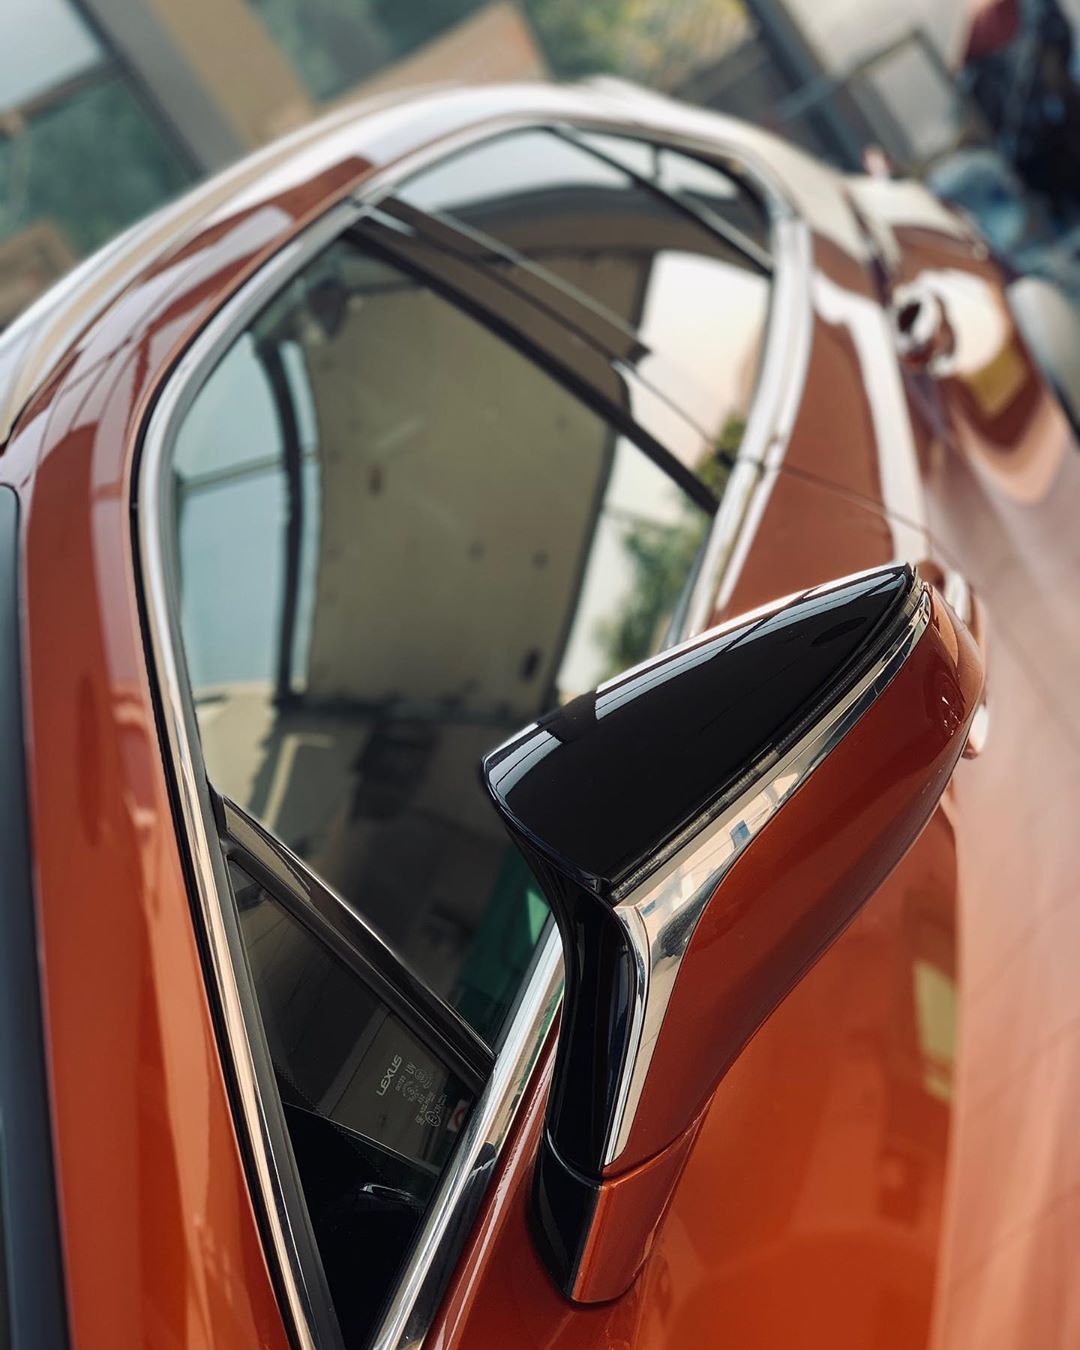 Защита кузова Лексус Lexus антигравийной полиуретановой пленкой | Оклейка оптики и зеркал